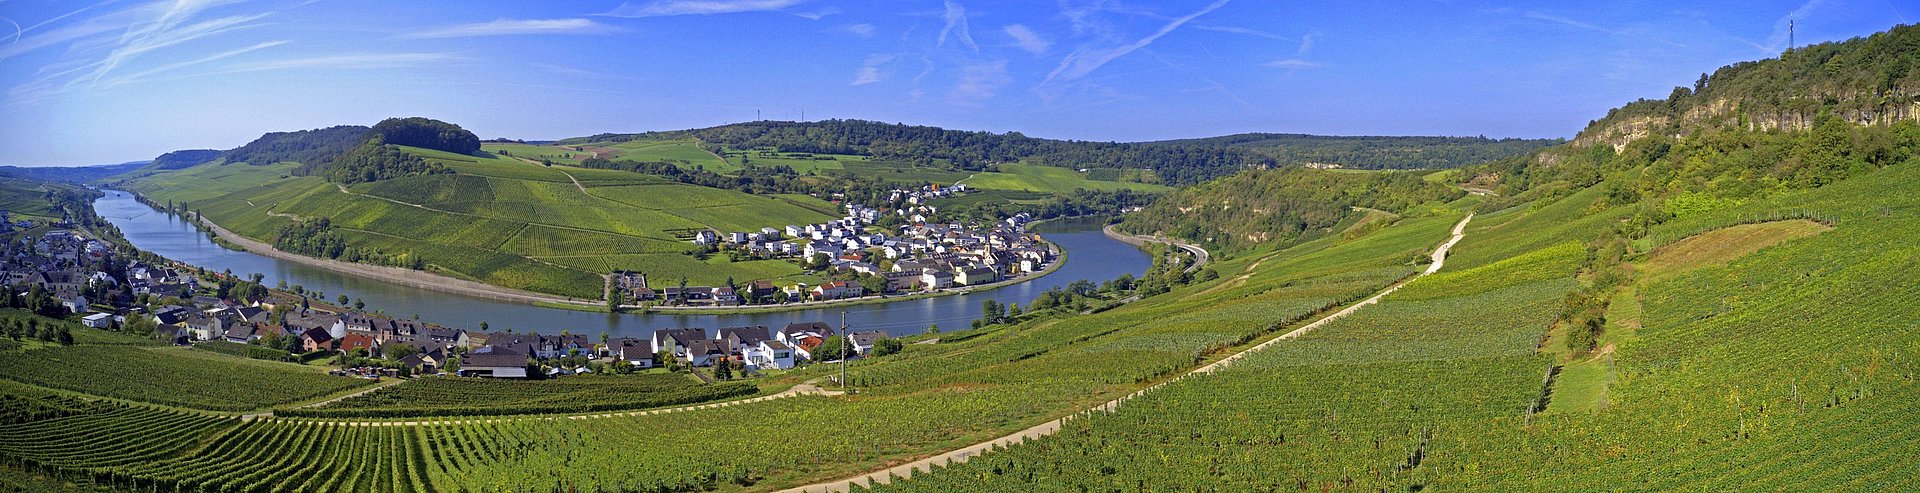 Blick auf das Moseltal und Luxemburg mit Weinbergen und Kalkfelsen